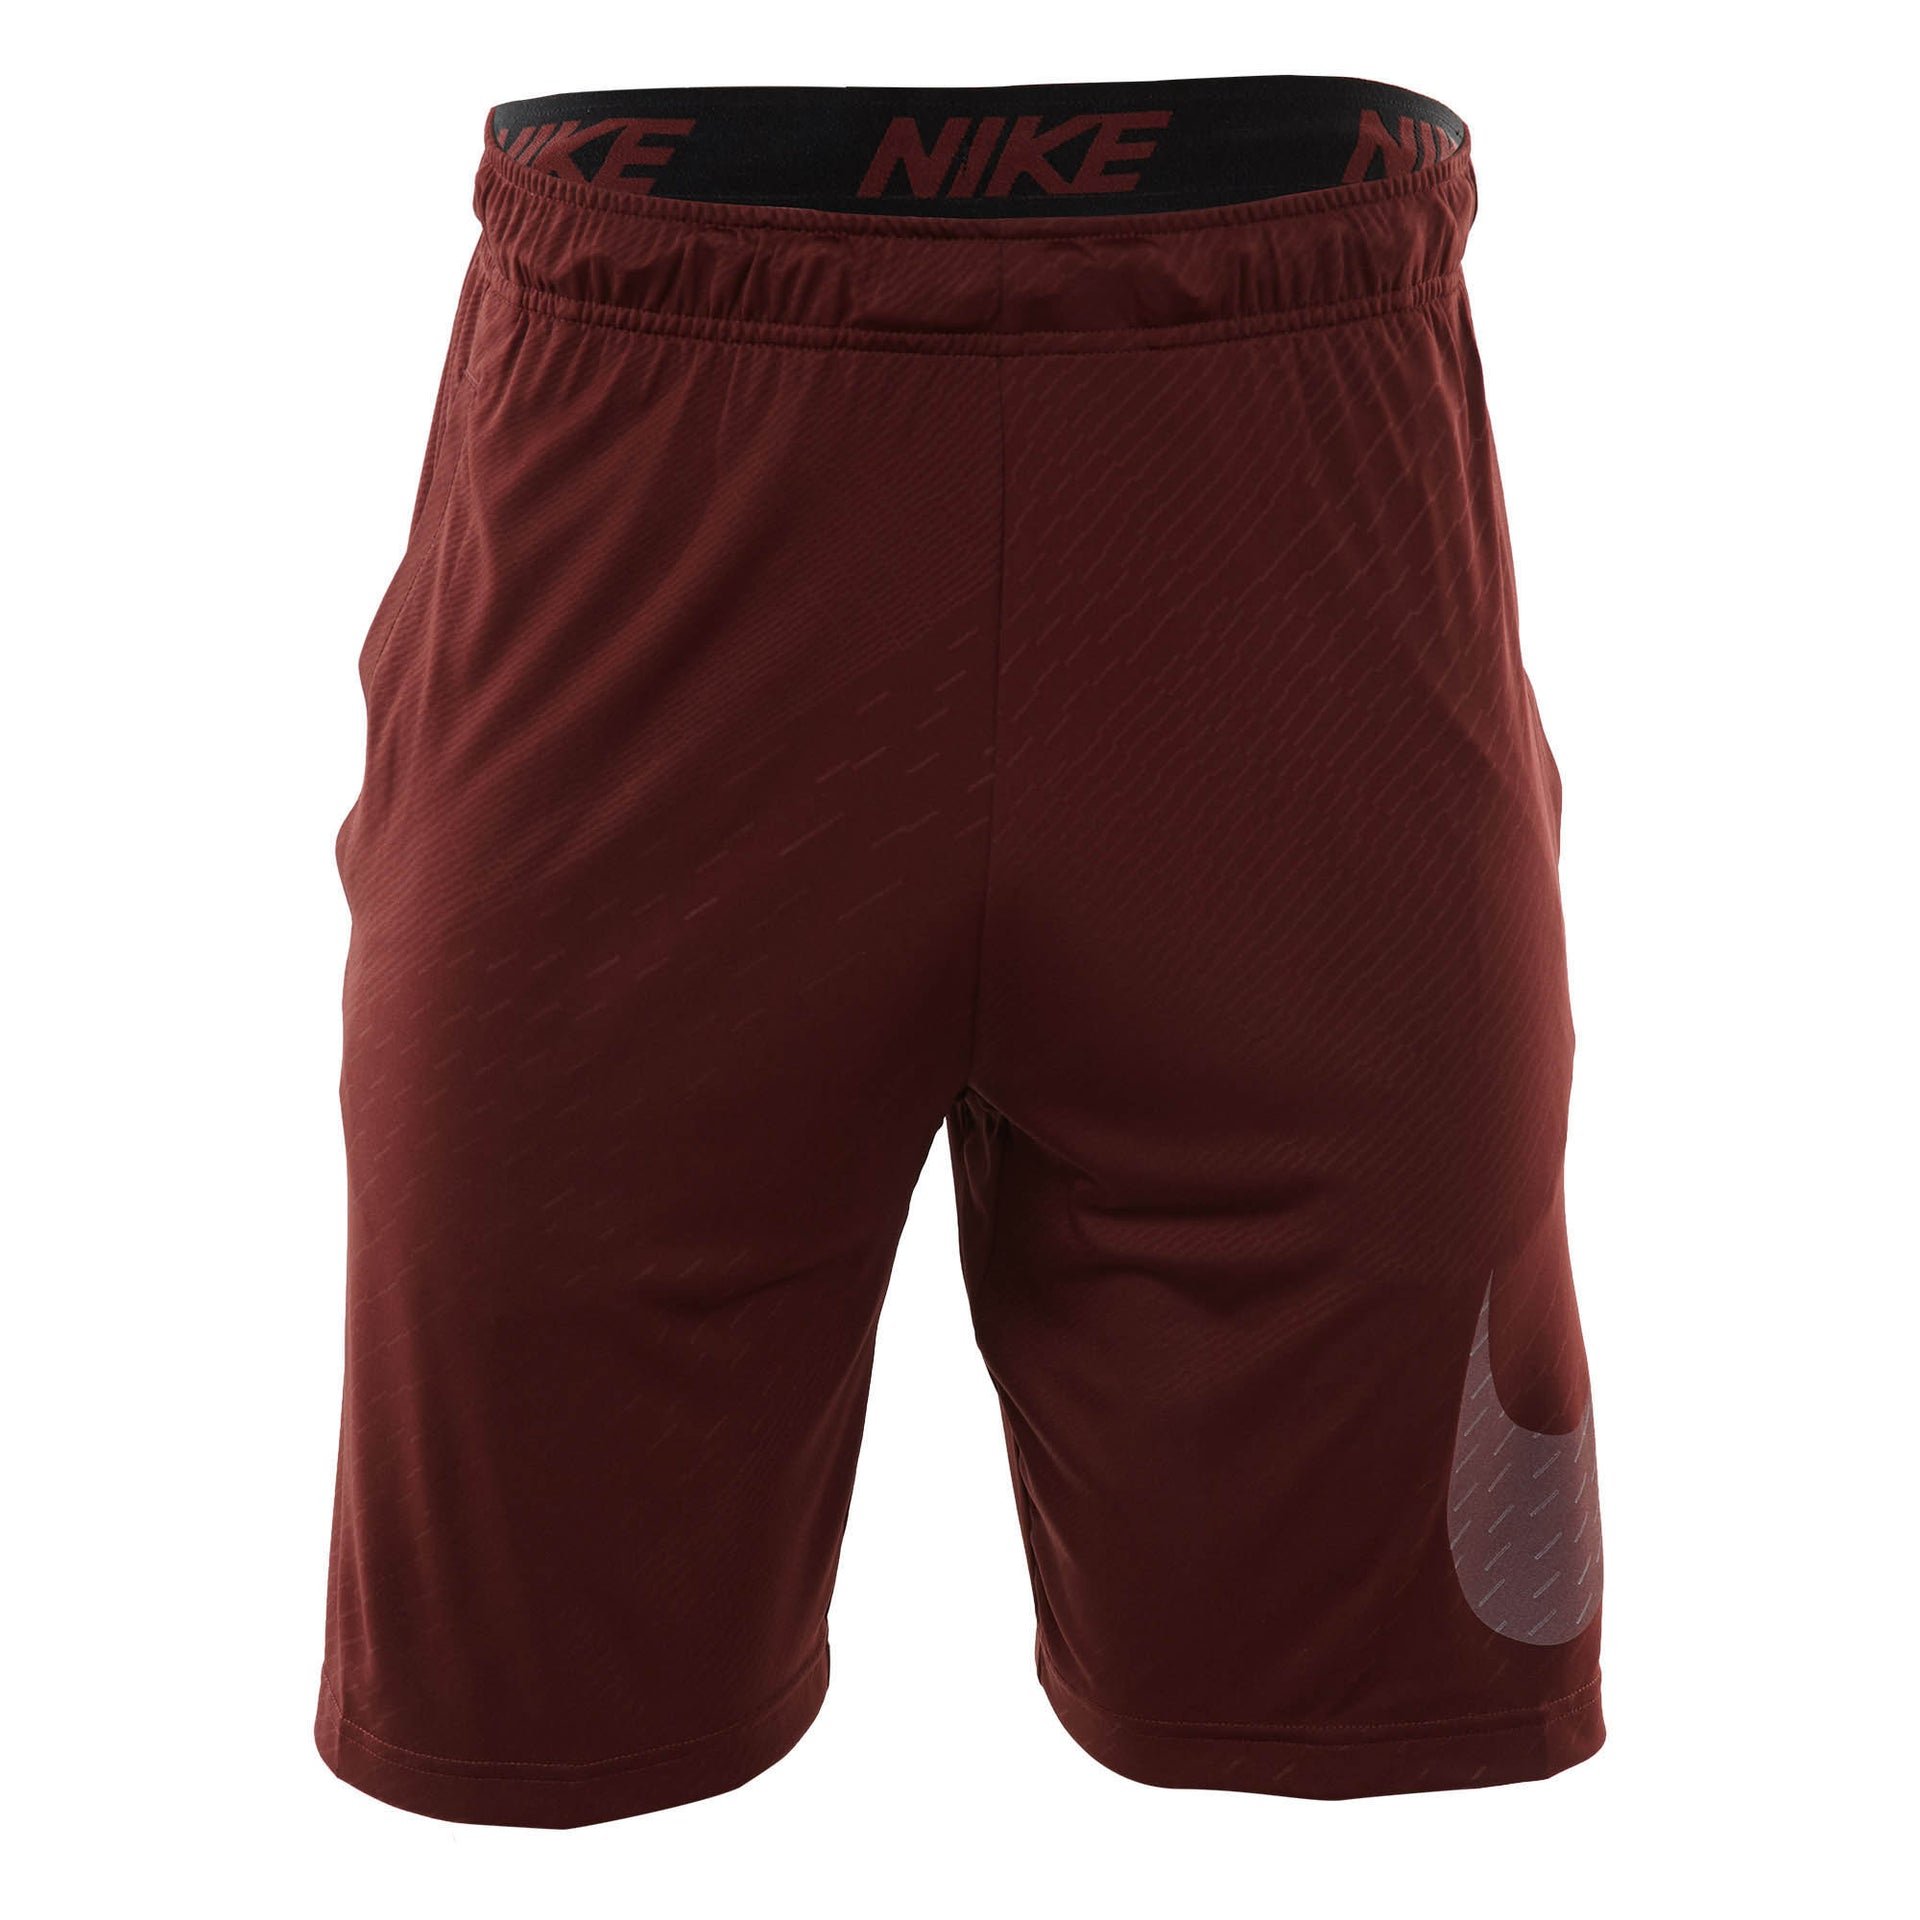 Nike Dry Embossed Training Short Mens Style : 860567